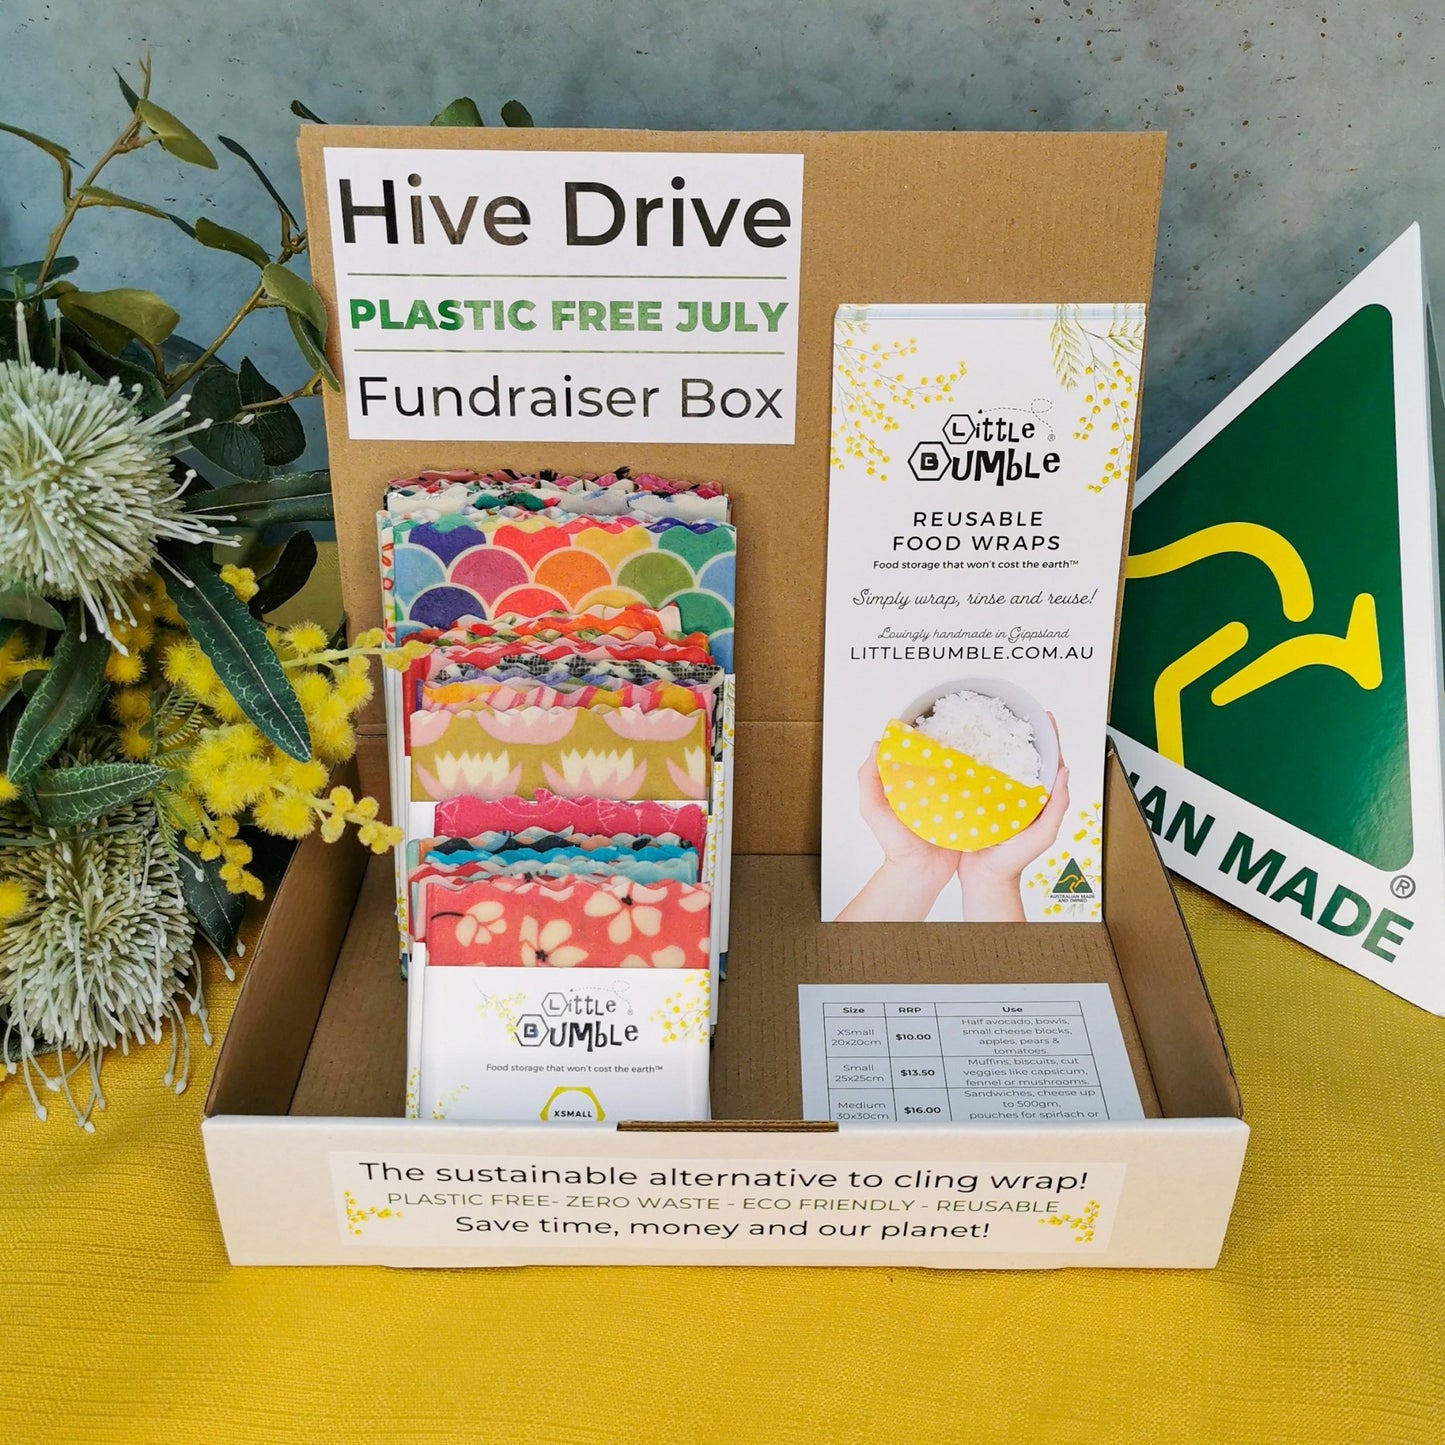 $200 Hive Drive - Little Bumble Reusable Food Wraps